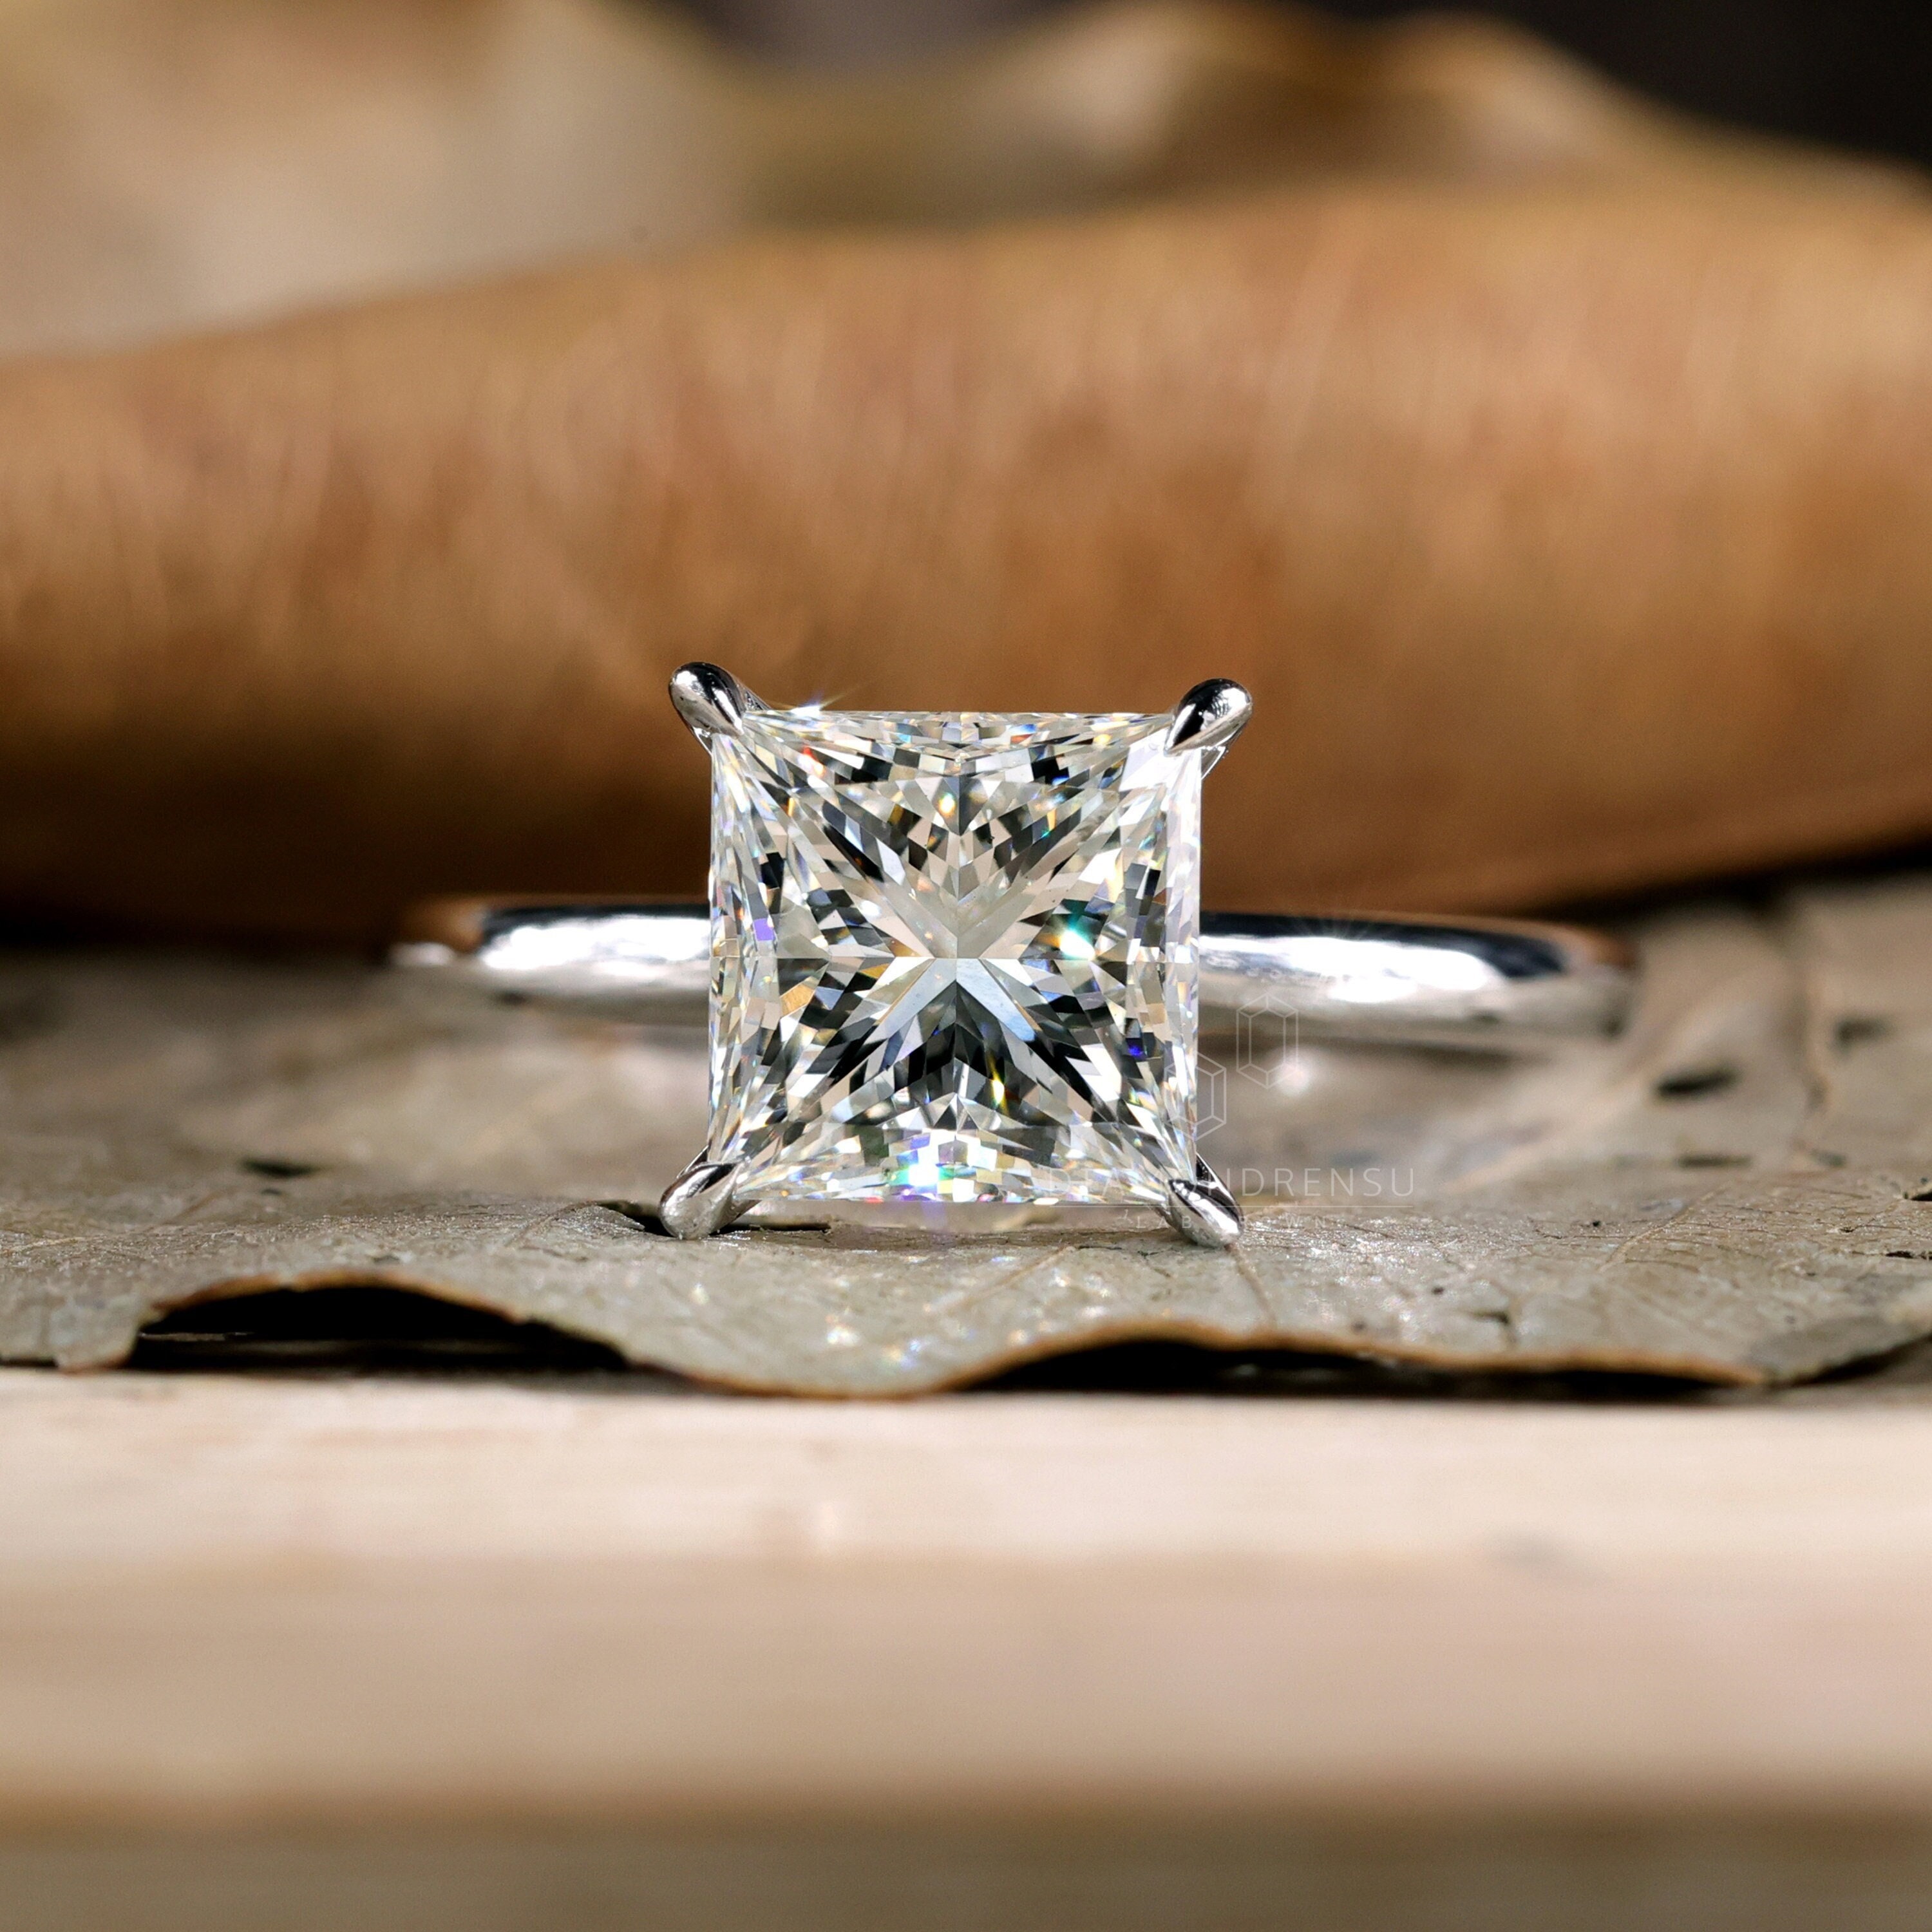 Kirk Kara Pirouetta Princess Cut Two-Tone Halo Diamond Engagement Ring - 18K White & Rose Gold